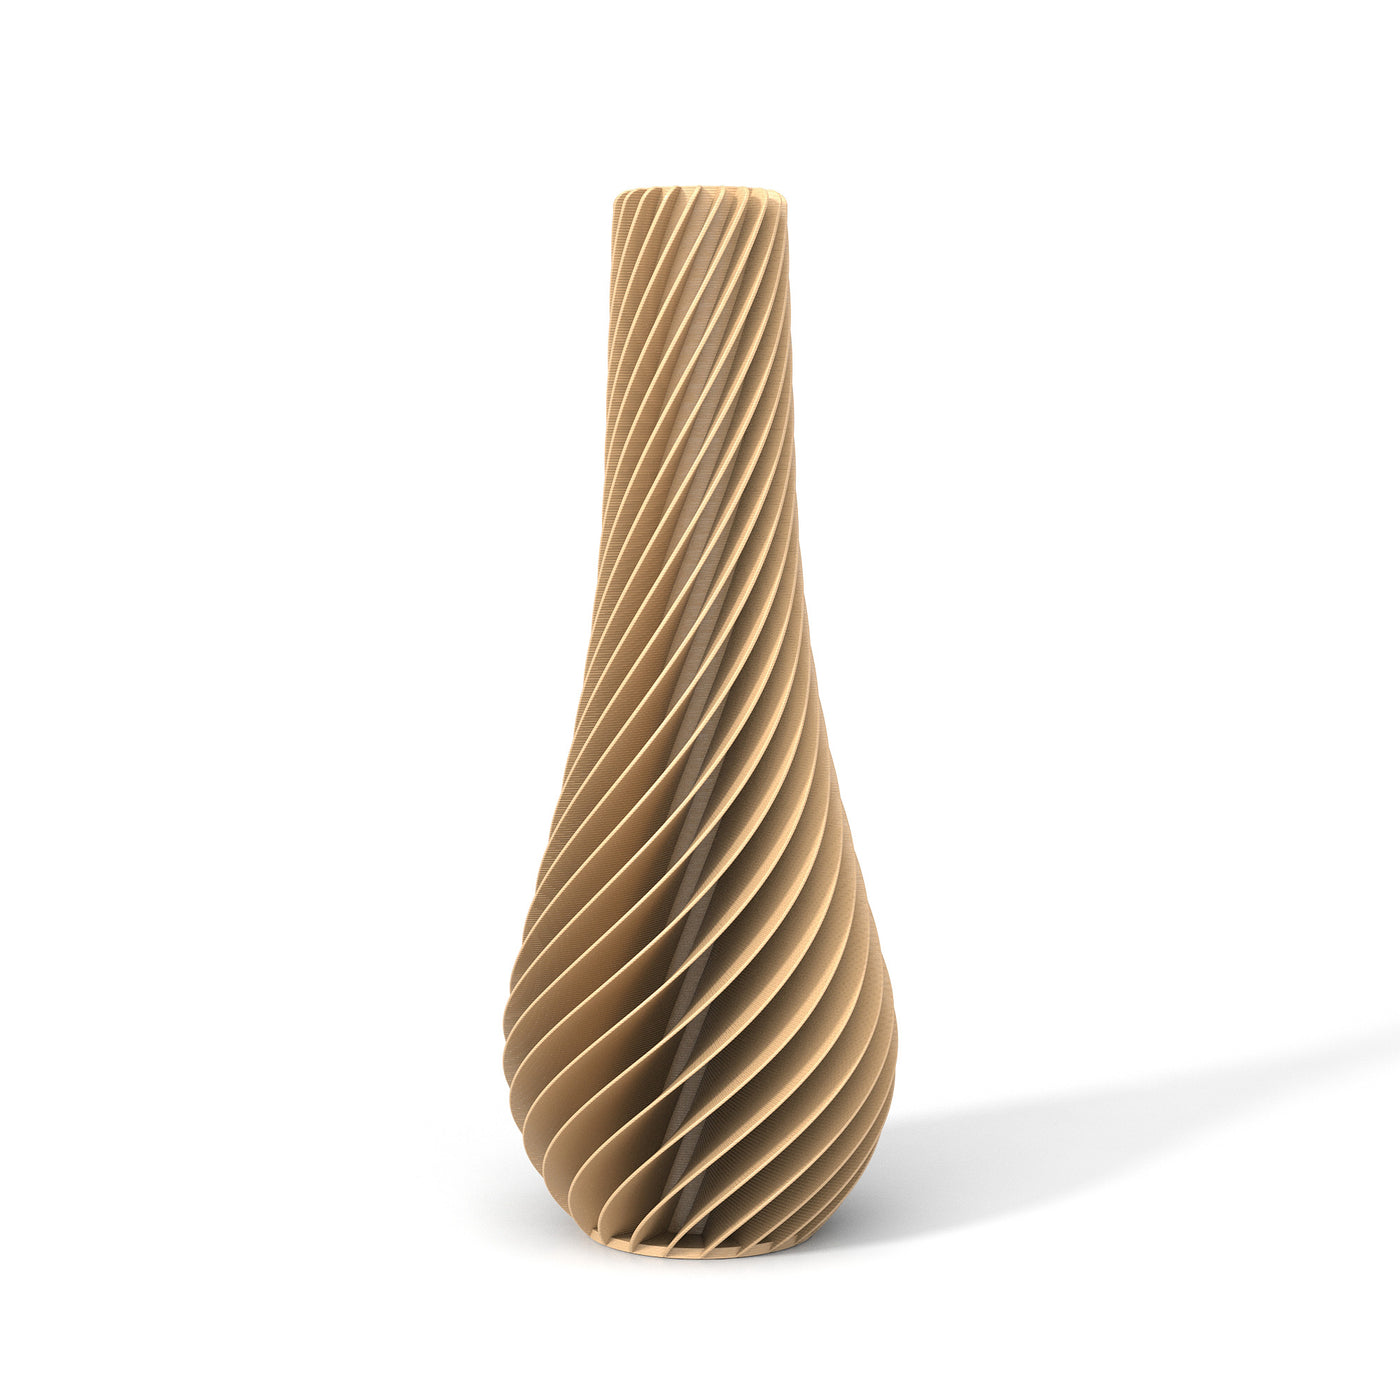 Béžová designová váza 3D print SPIRAL 2 zepředu